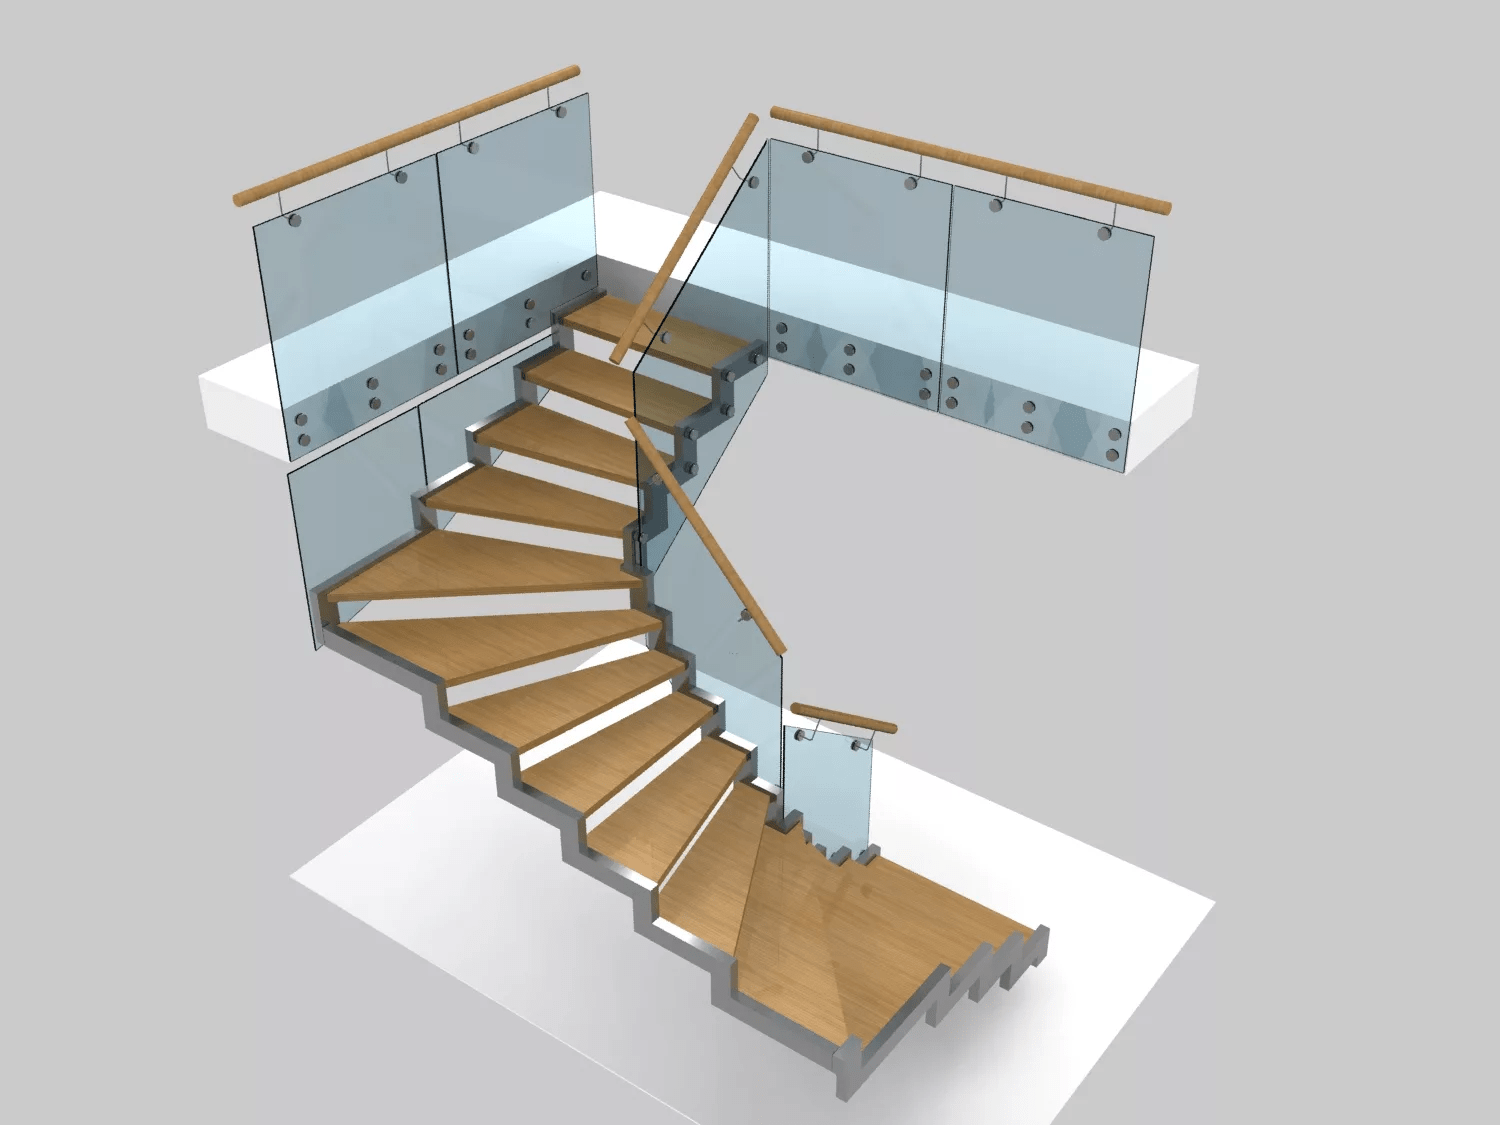 Программа для проектирования лестничной конструкции на второй этаж.